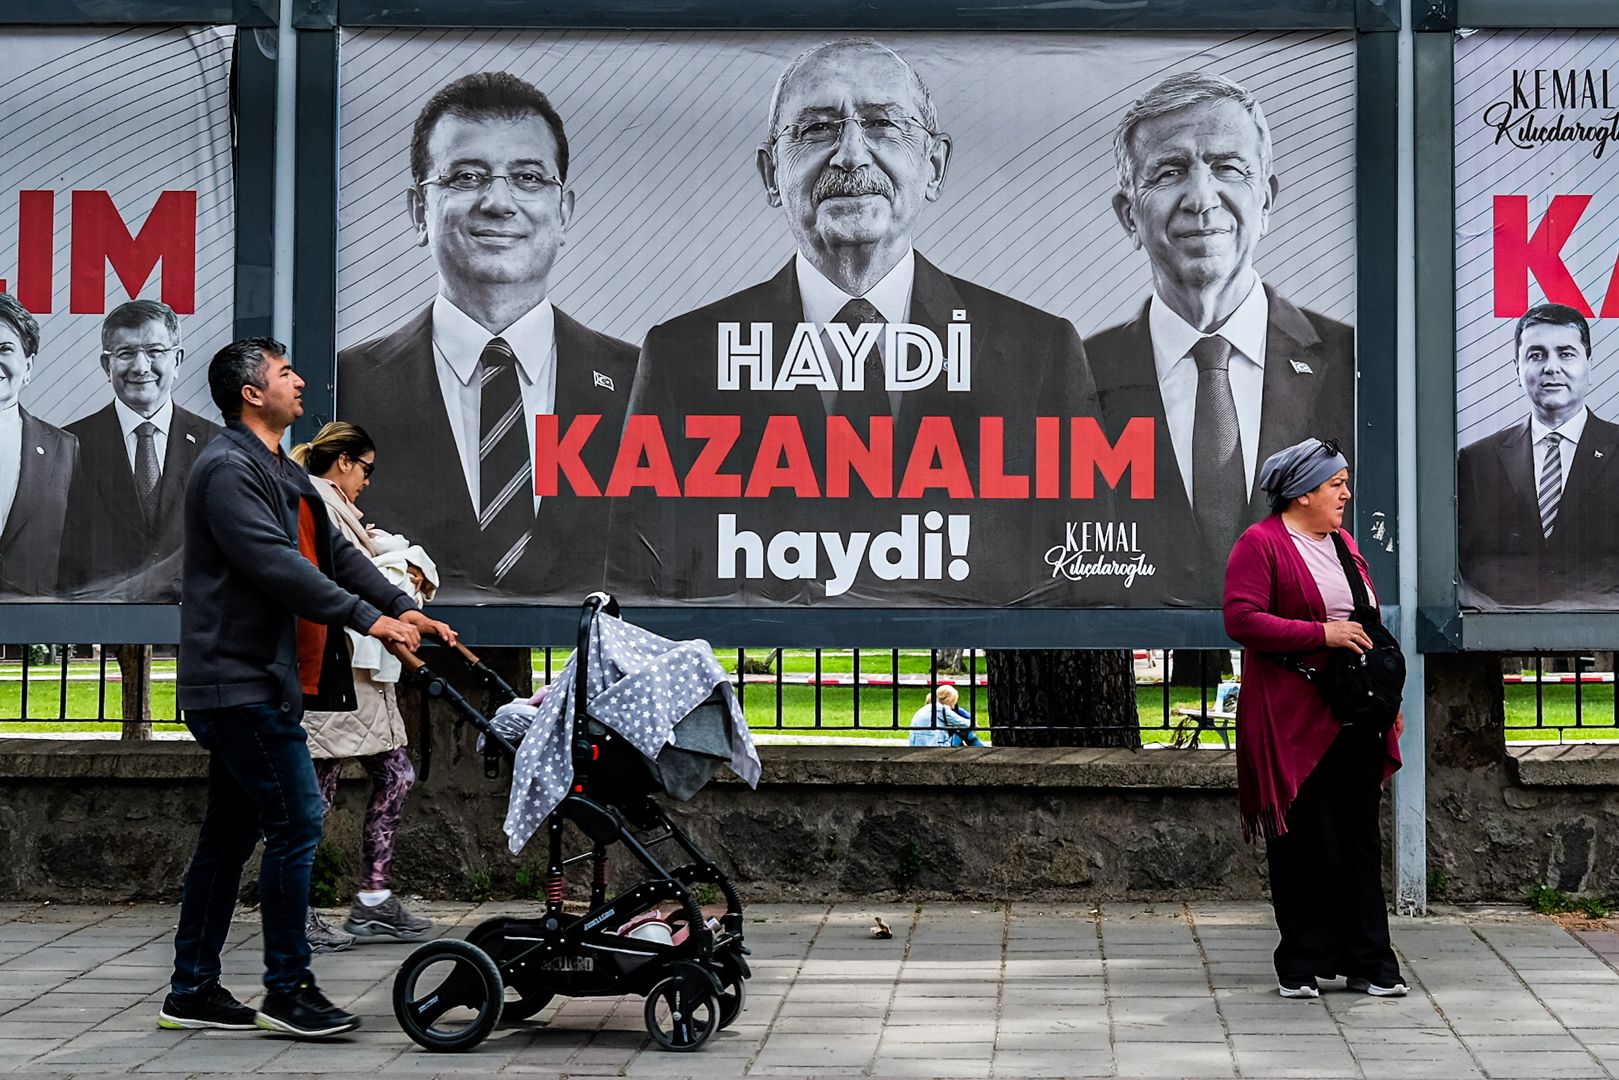 Люди проходят мимо плакатов с изображением Кемаля Киличдароглу, мэра Стамбула Экрема Имамоглу и мэра Анкары Мансура Явы. 2023